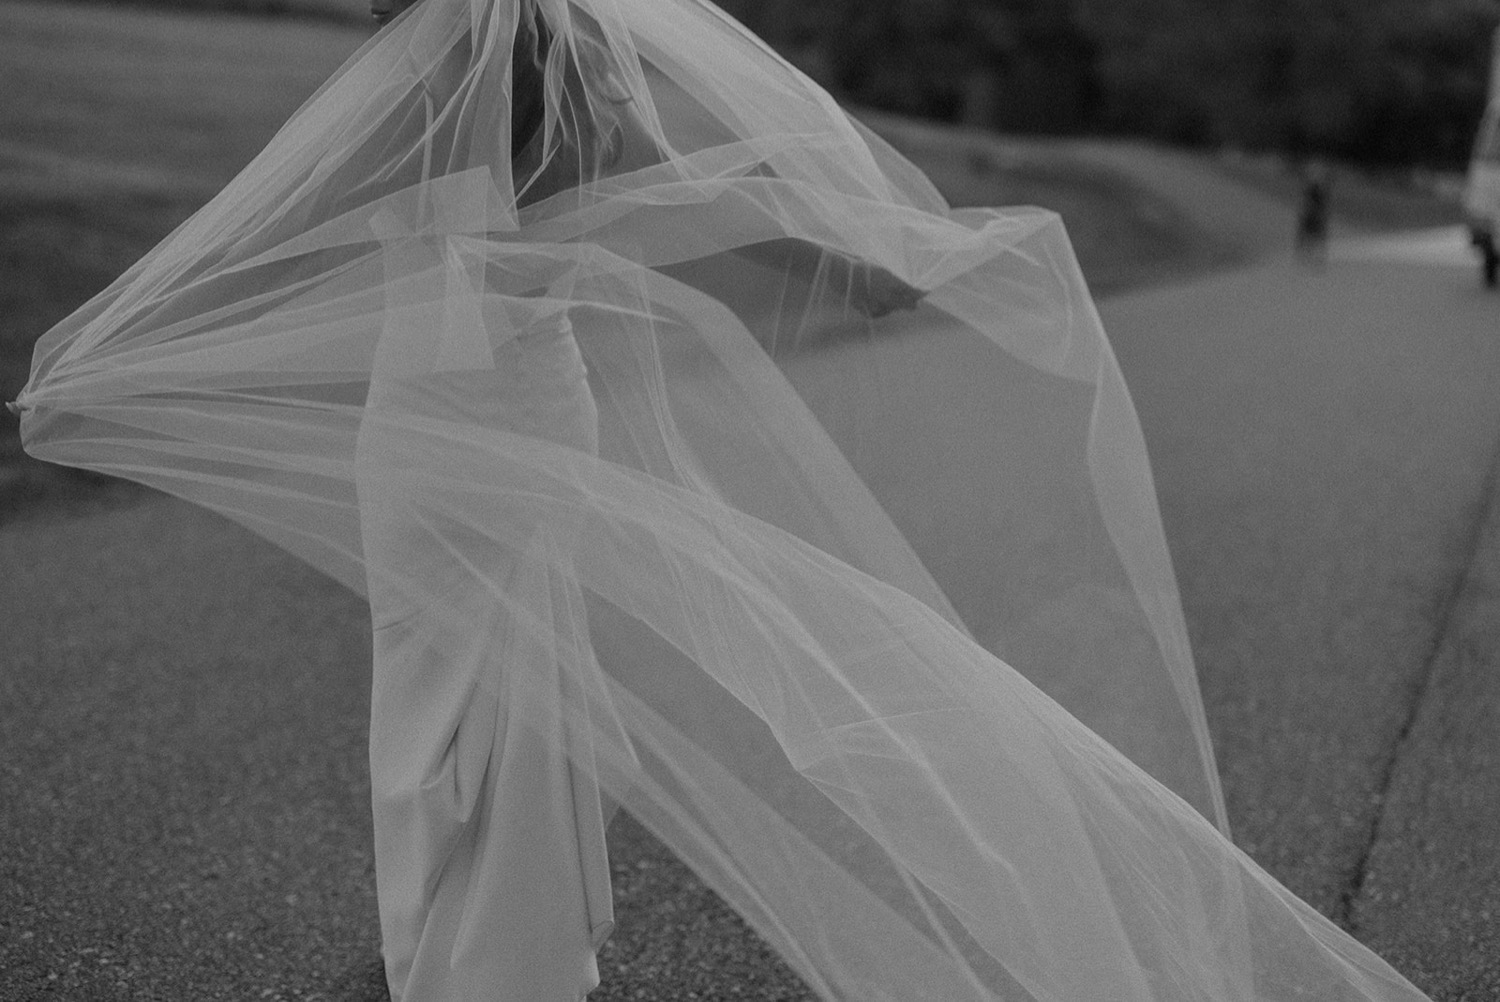 shadowy bridal wedding veil